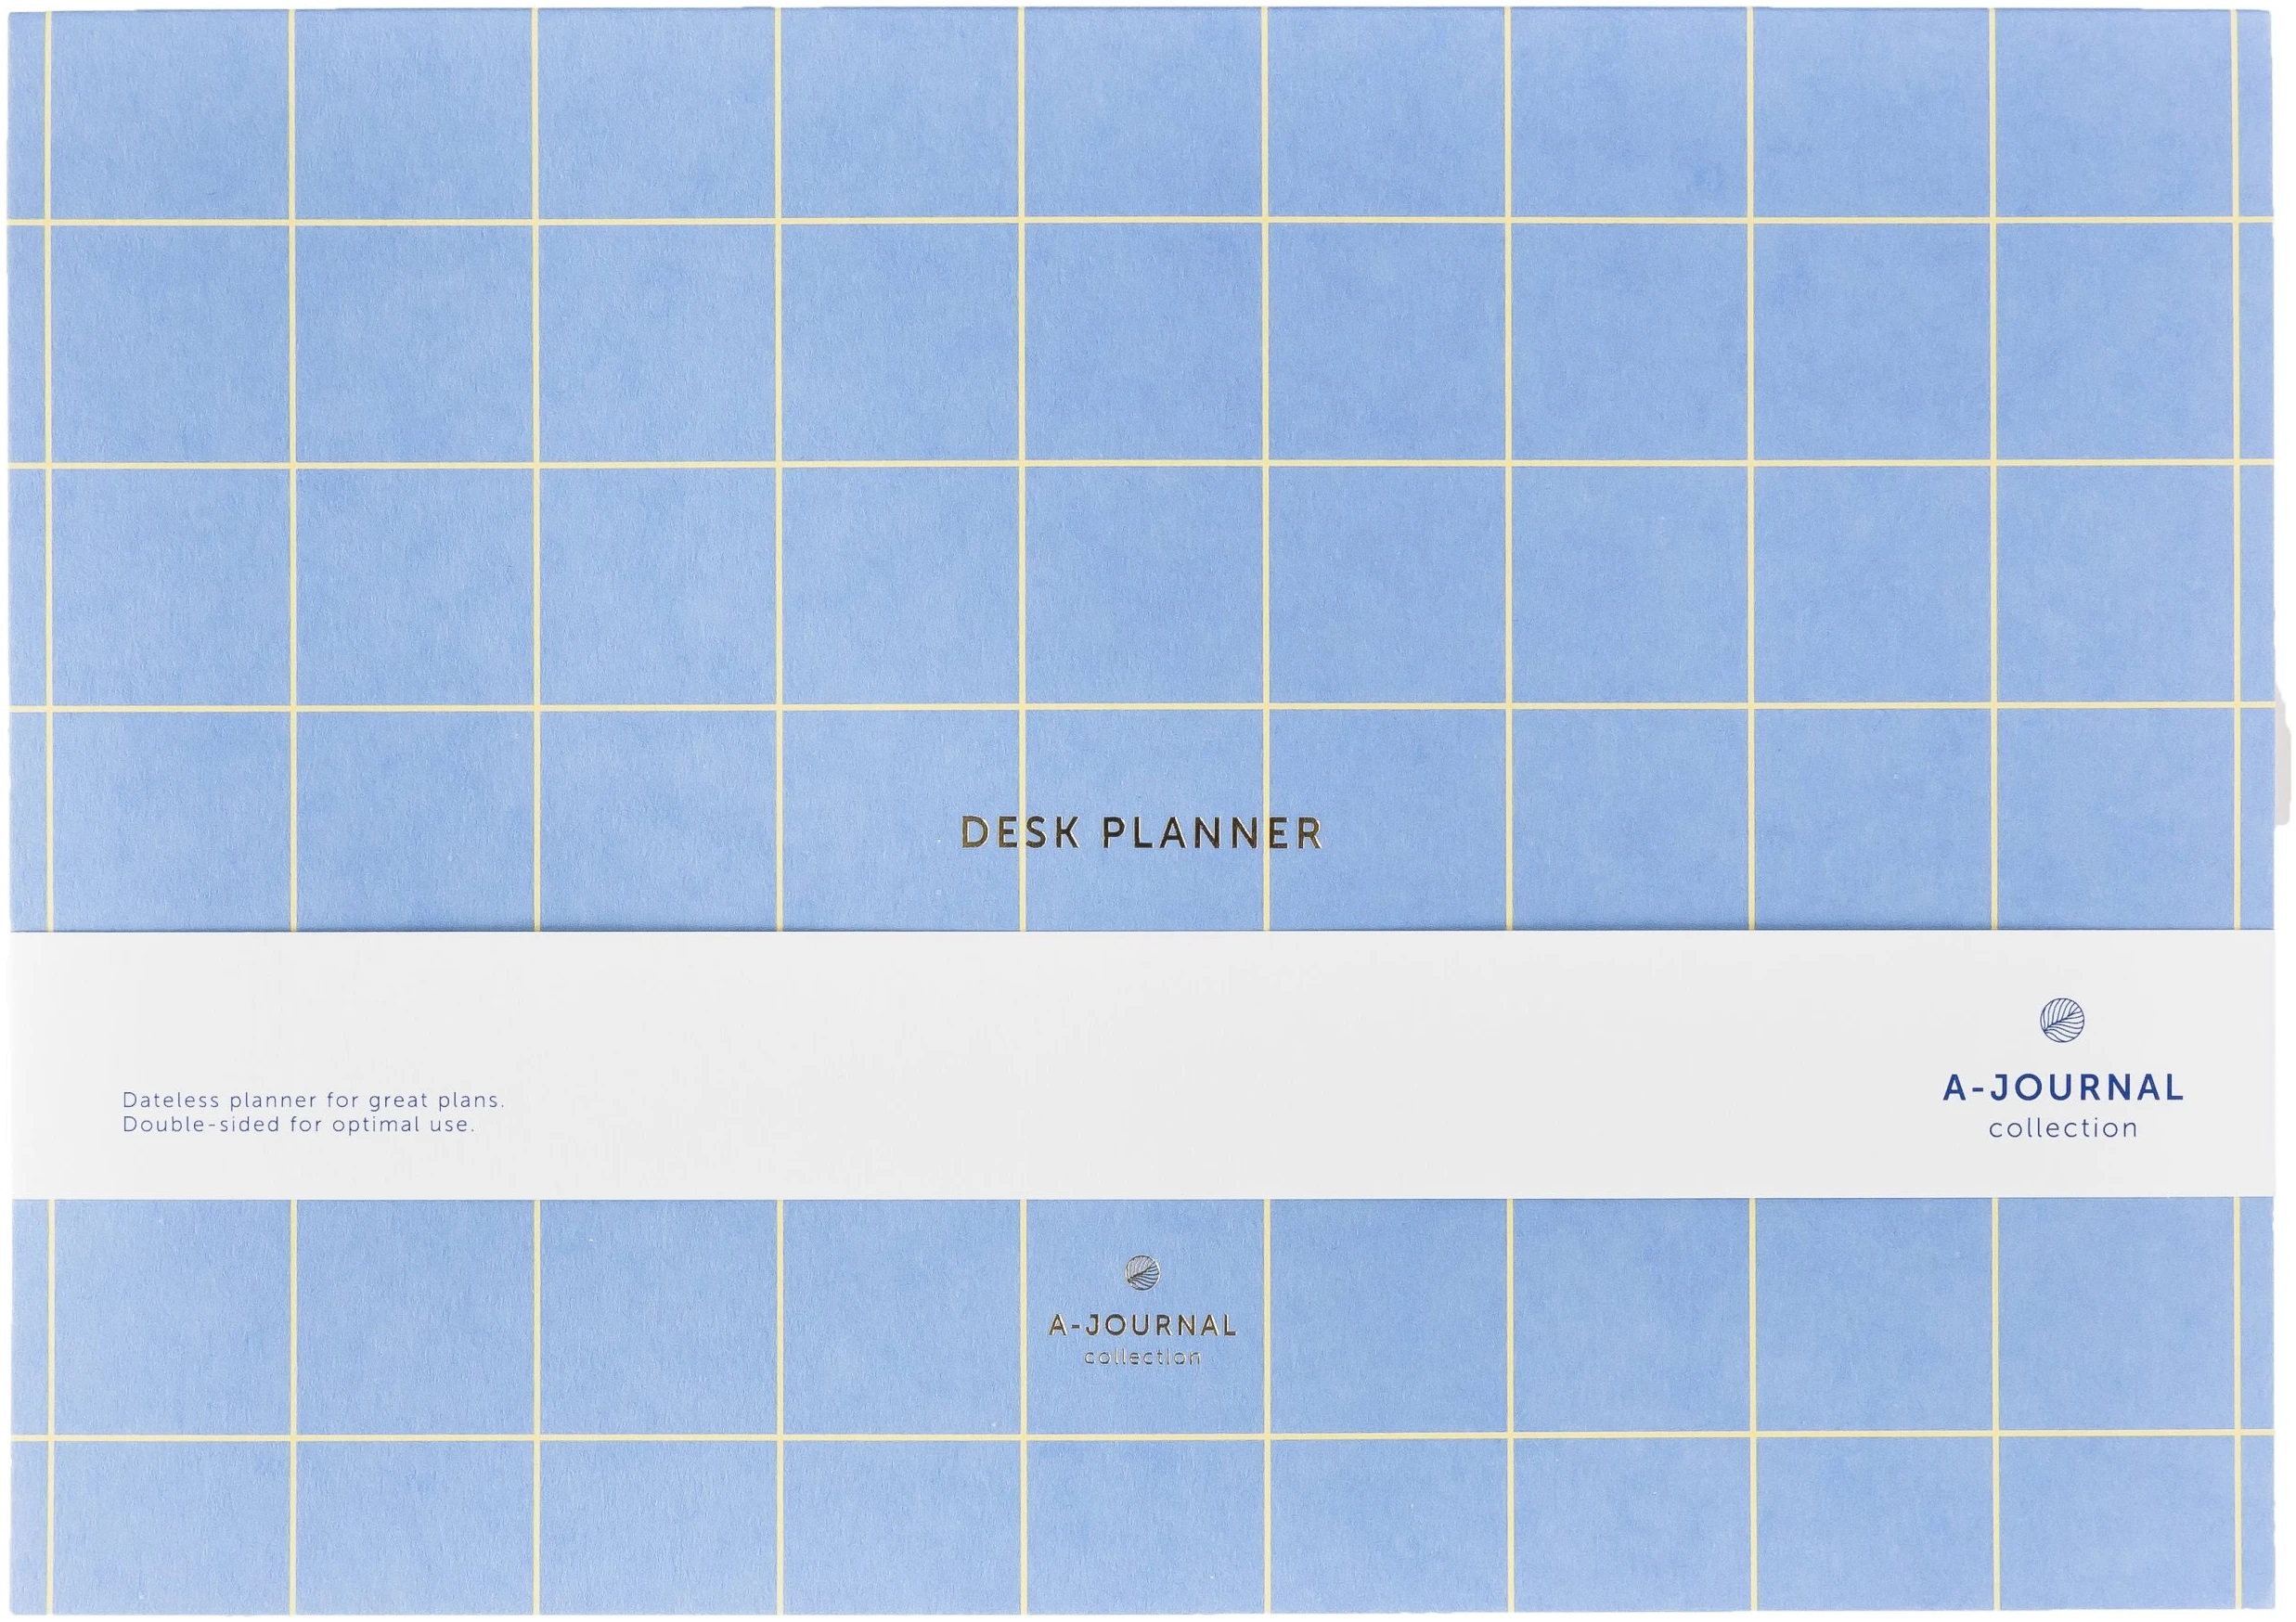 Desk planner/week planner lavender blue